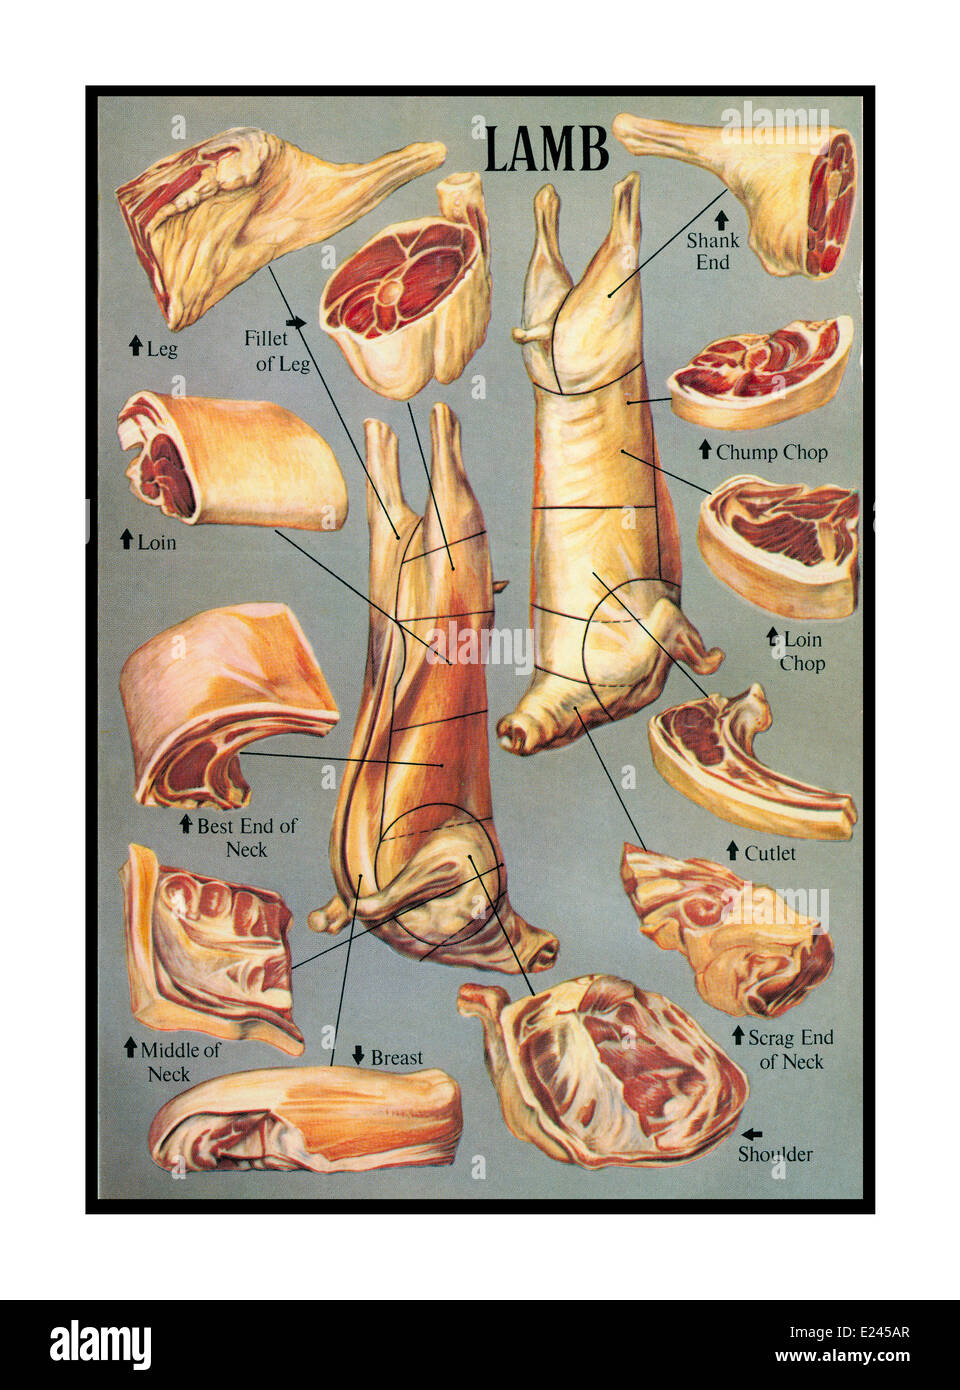 LAMMSCHLACHTER FUTTERNETZE traditionelle Retro 1950er Jahre Kochbuch Fleisch Veranschaulichung einer umfassenden Vielfalt an Lammschnitten und -Fugen Stockfoto